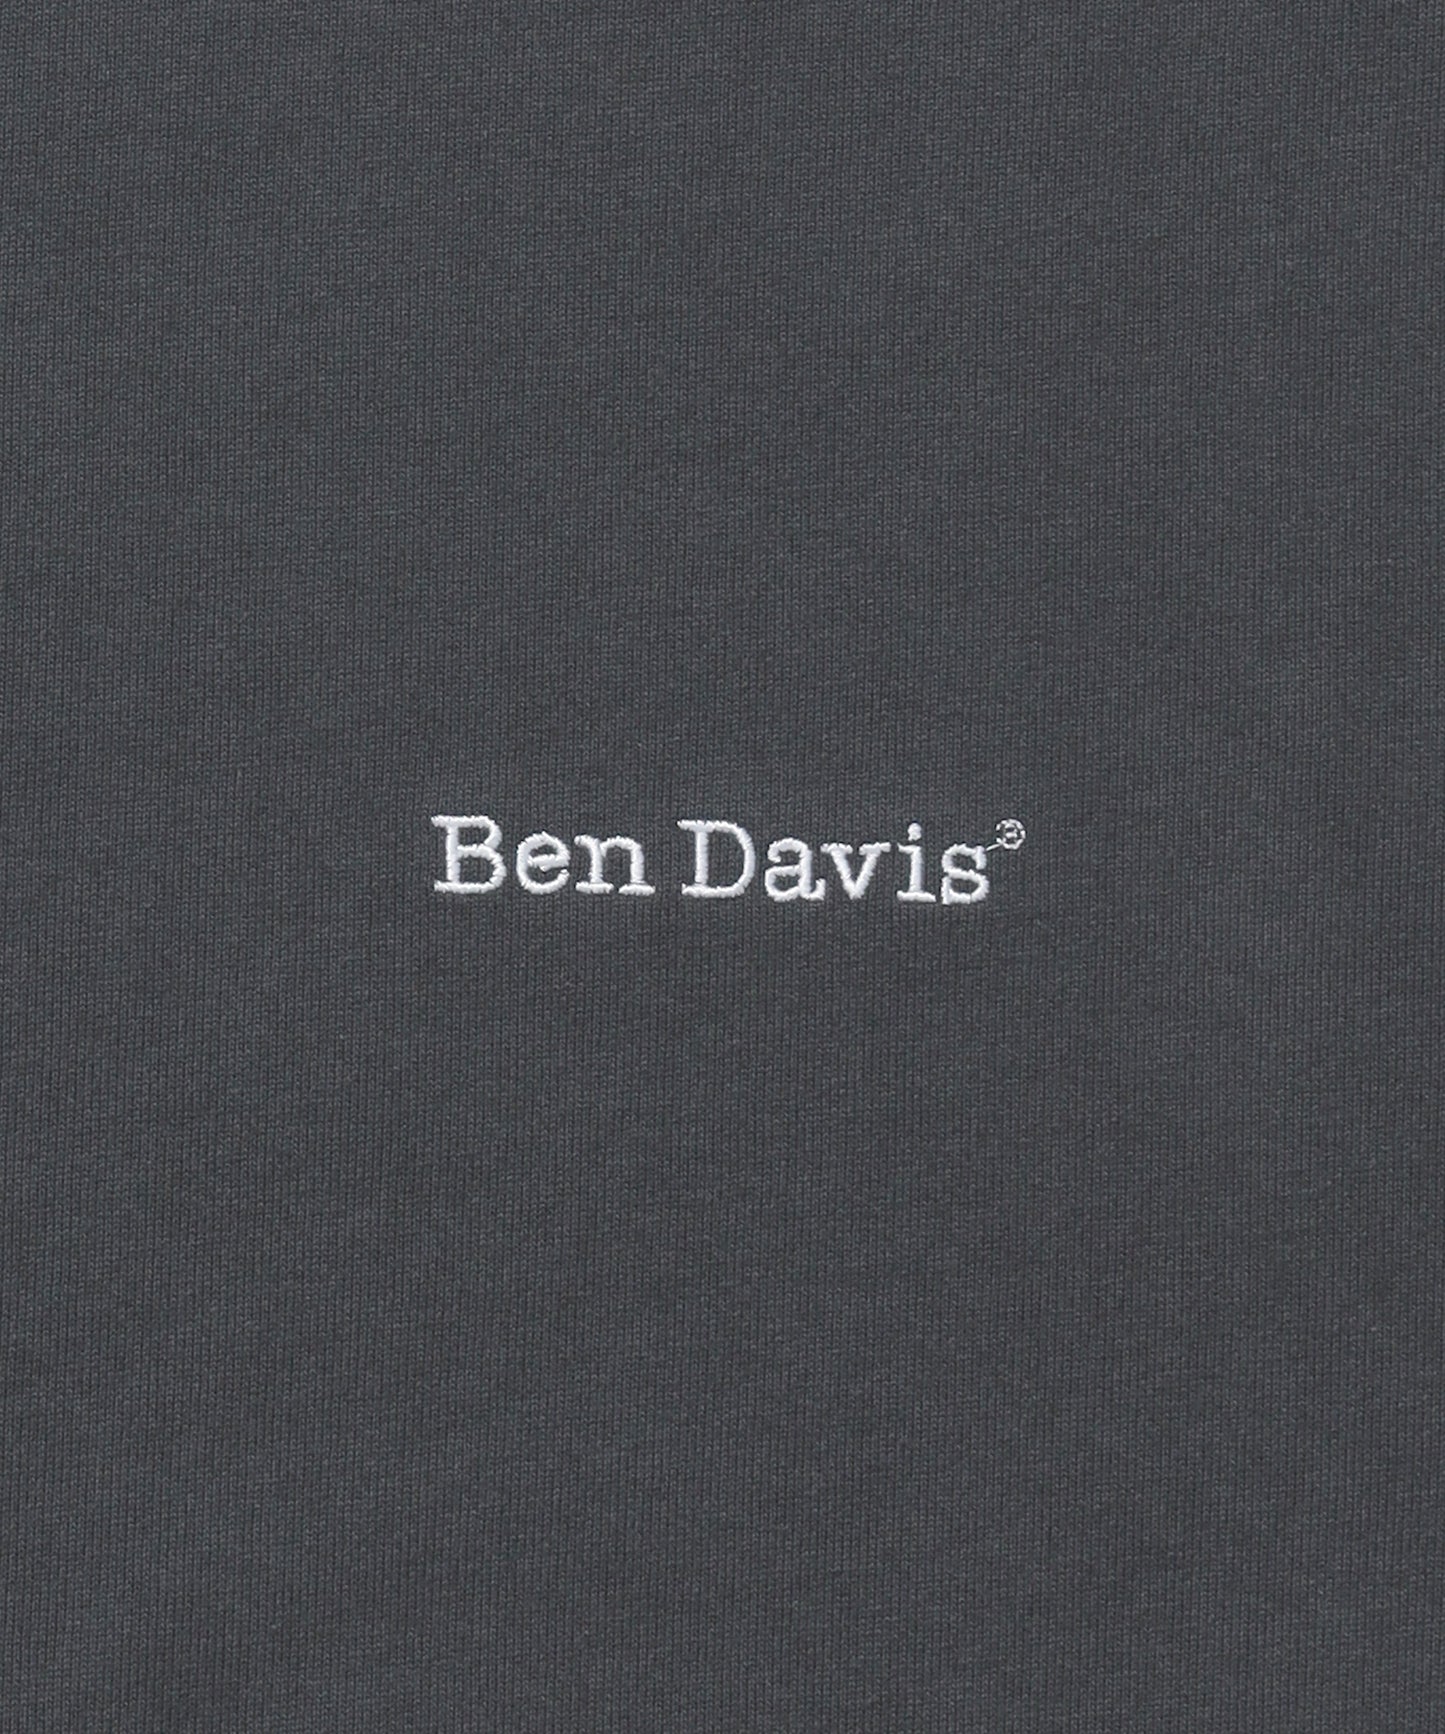 BEN'S EMB TEE / スケーター ワンポイント Tシャツ シンプル スクウェアロゴ 刺繍 半袖 チャコール